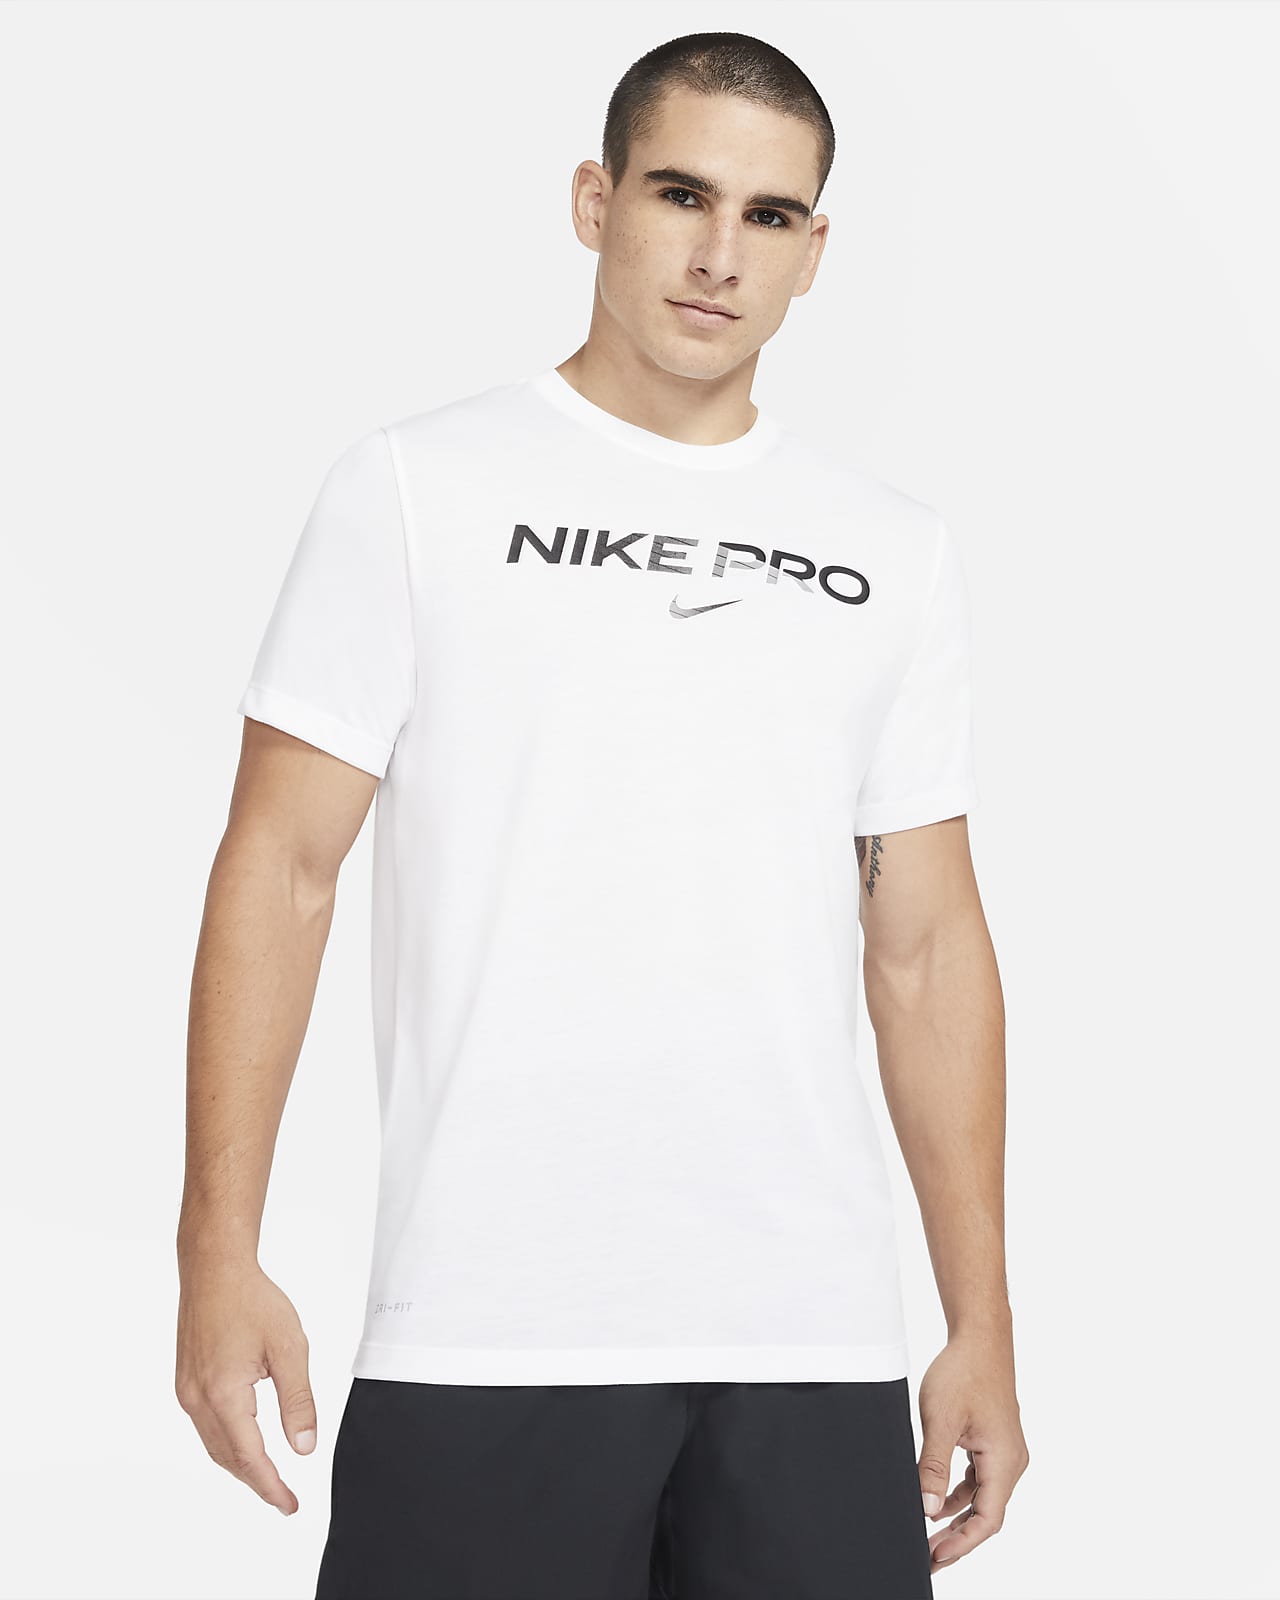 nike pro black t shirt